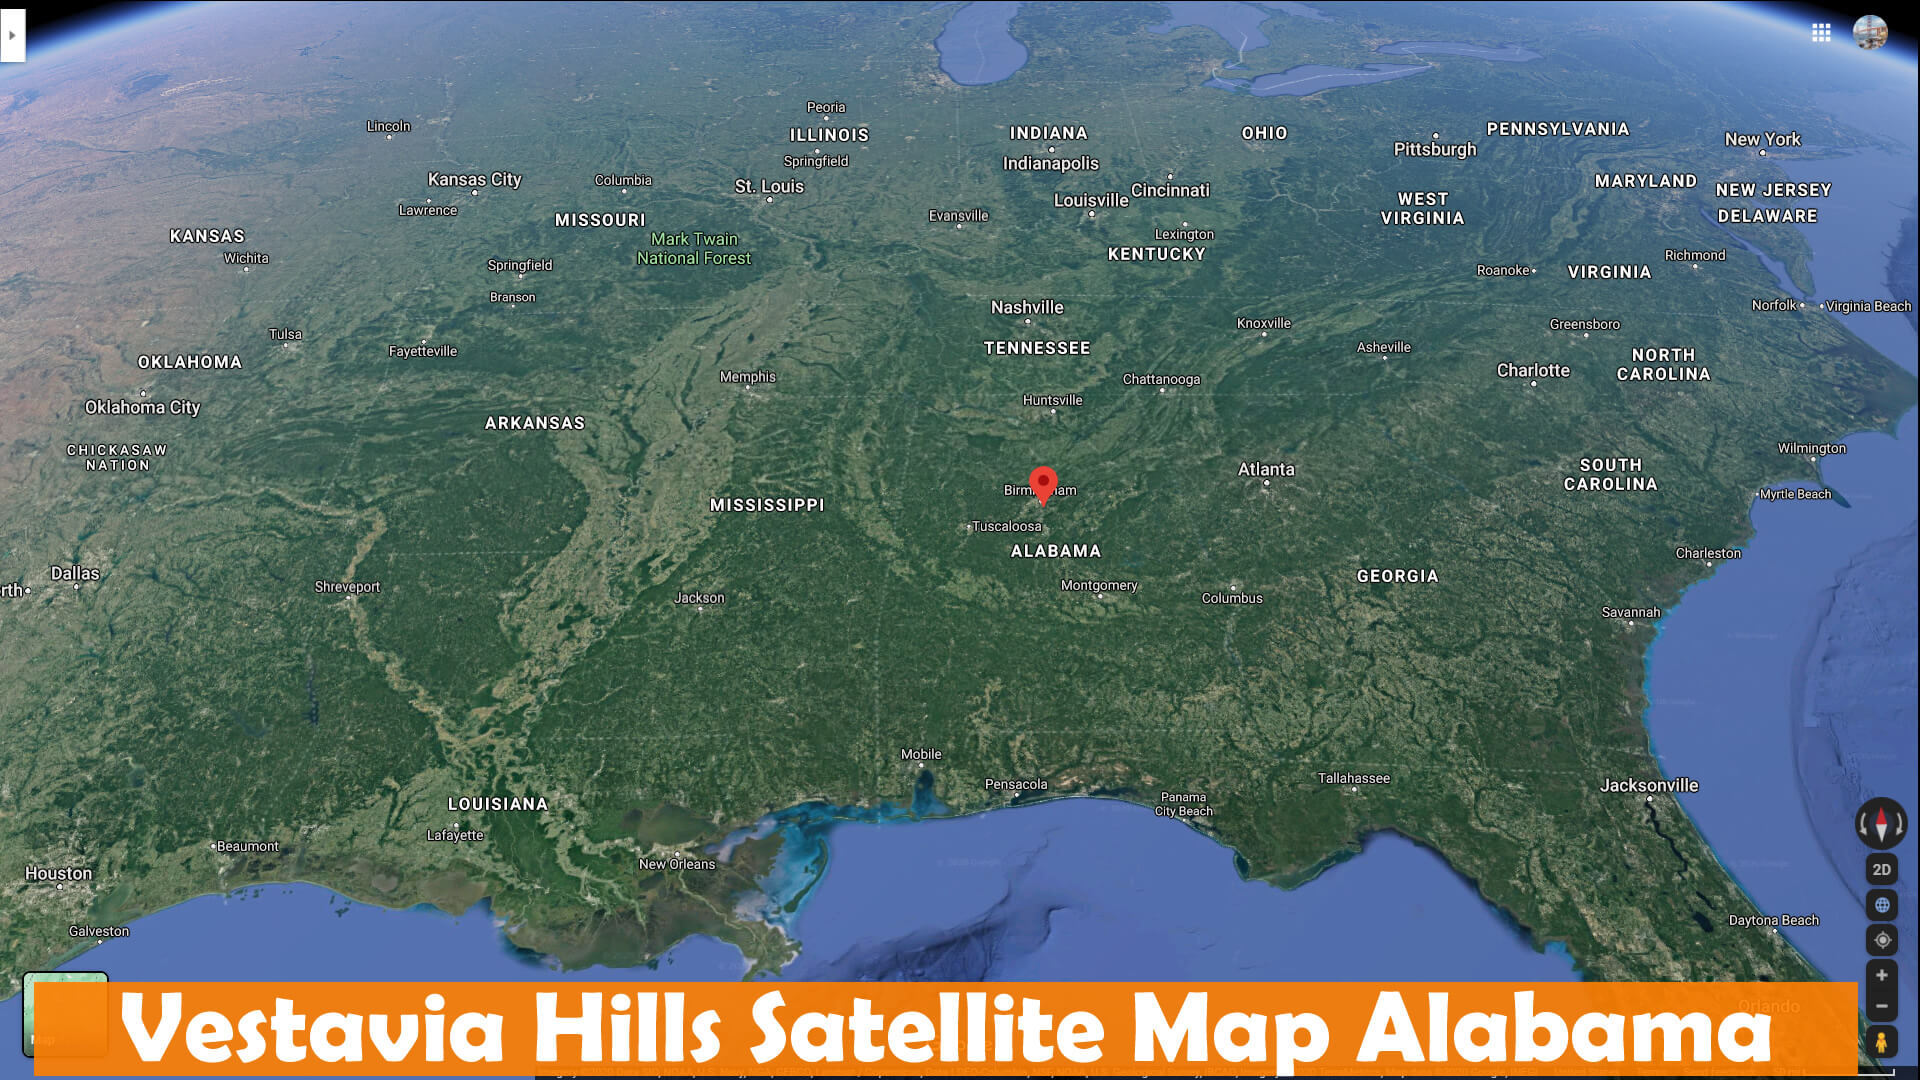 Vestavia Hills Satellite Map Alabama